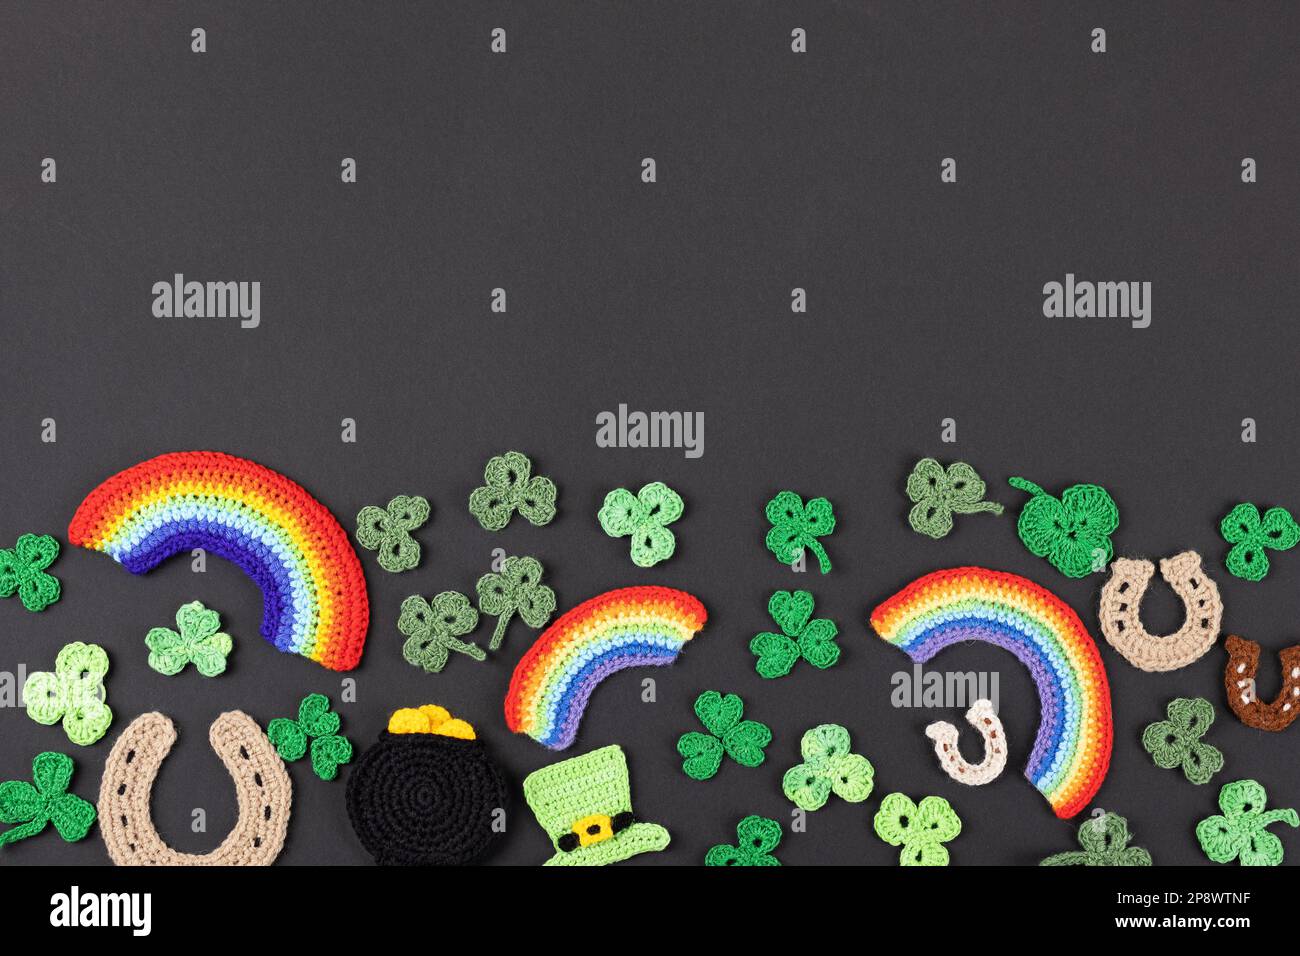 St. Patrick's Day Konzept. Gestrickte Komposition aus grünem Hut, goldenem Topf, Hufeisen, Regenbogen und grünen Shamrocks auf schwarzem Hintergrund Stockfoto